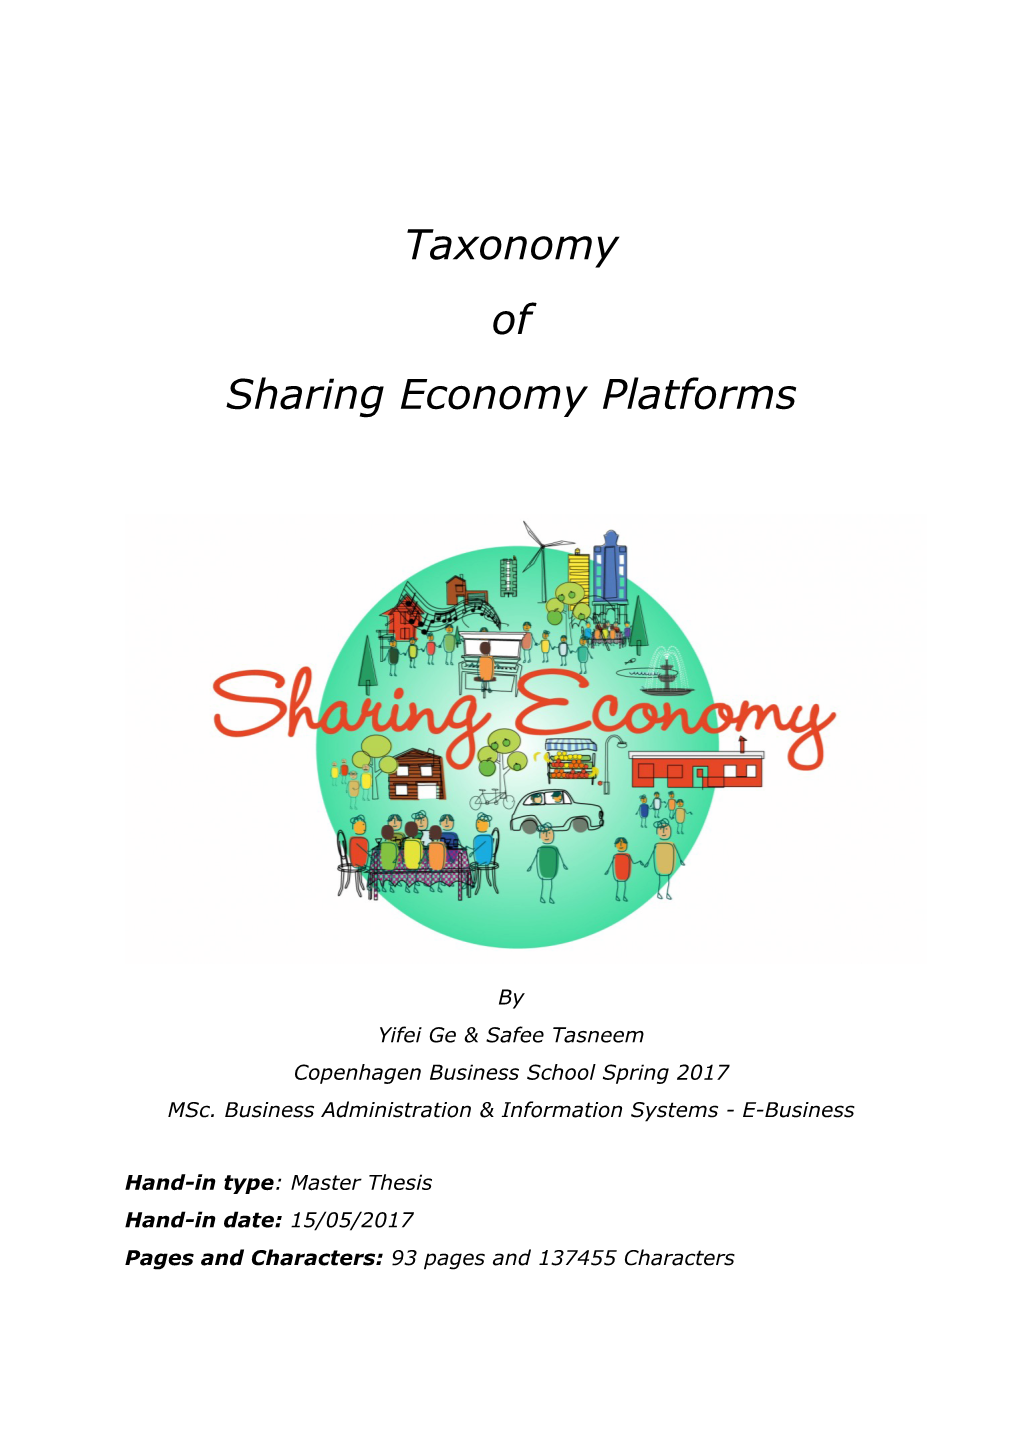 Taxonomy of Sharing Economy Platforms